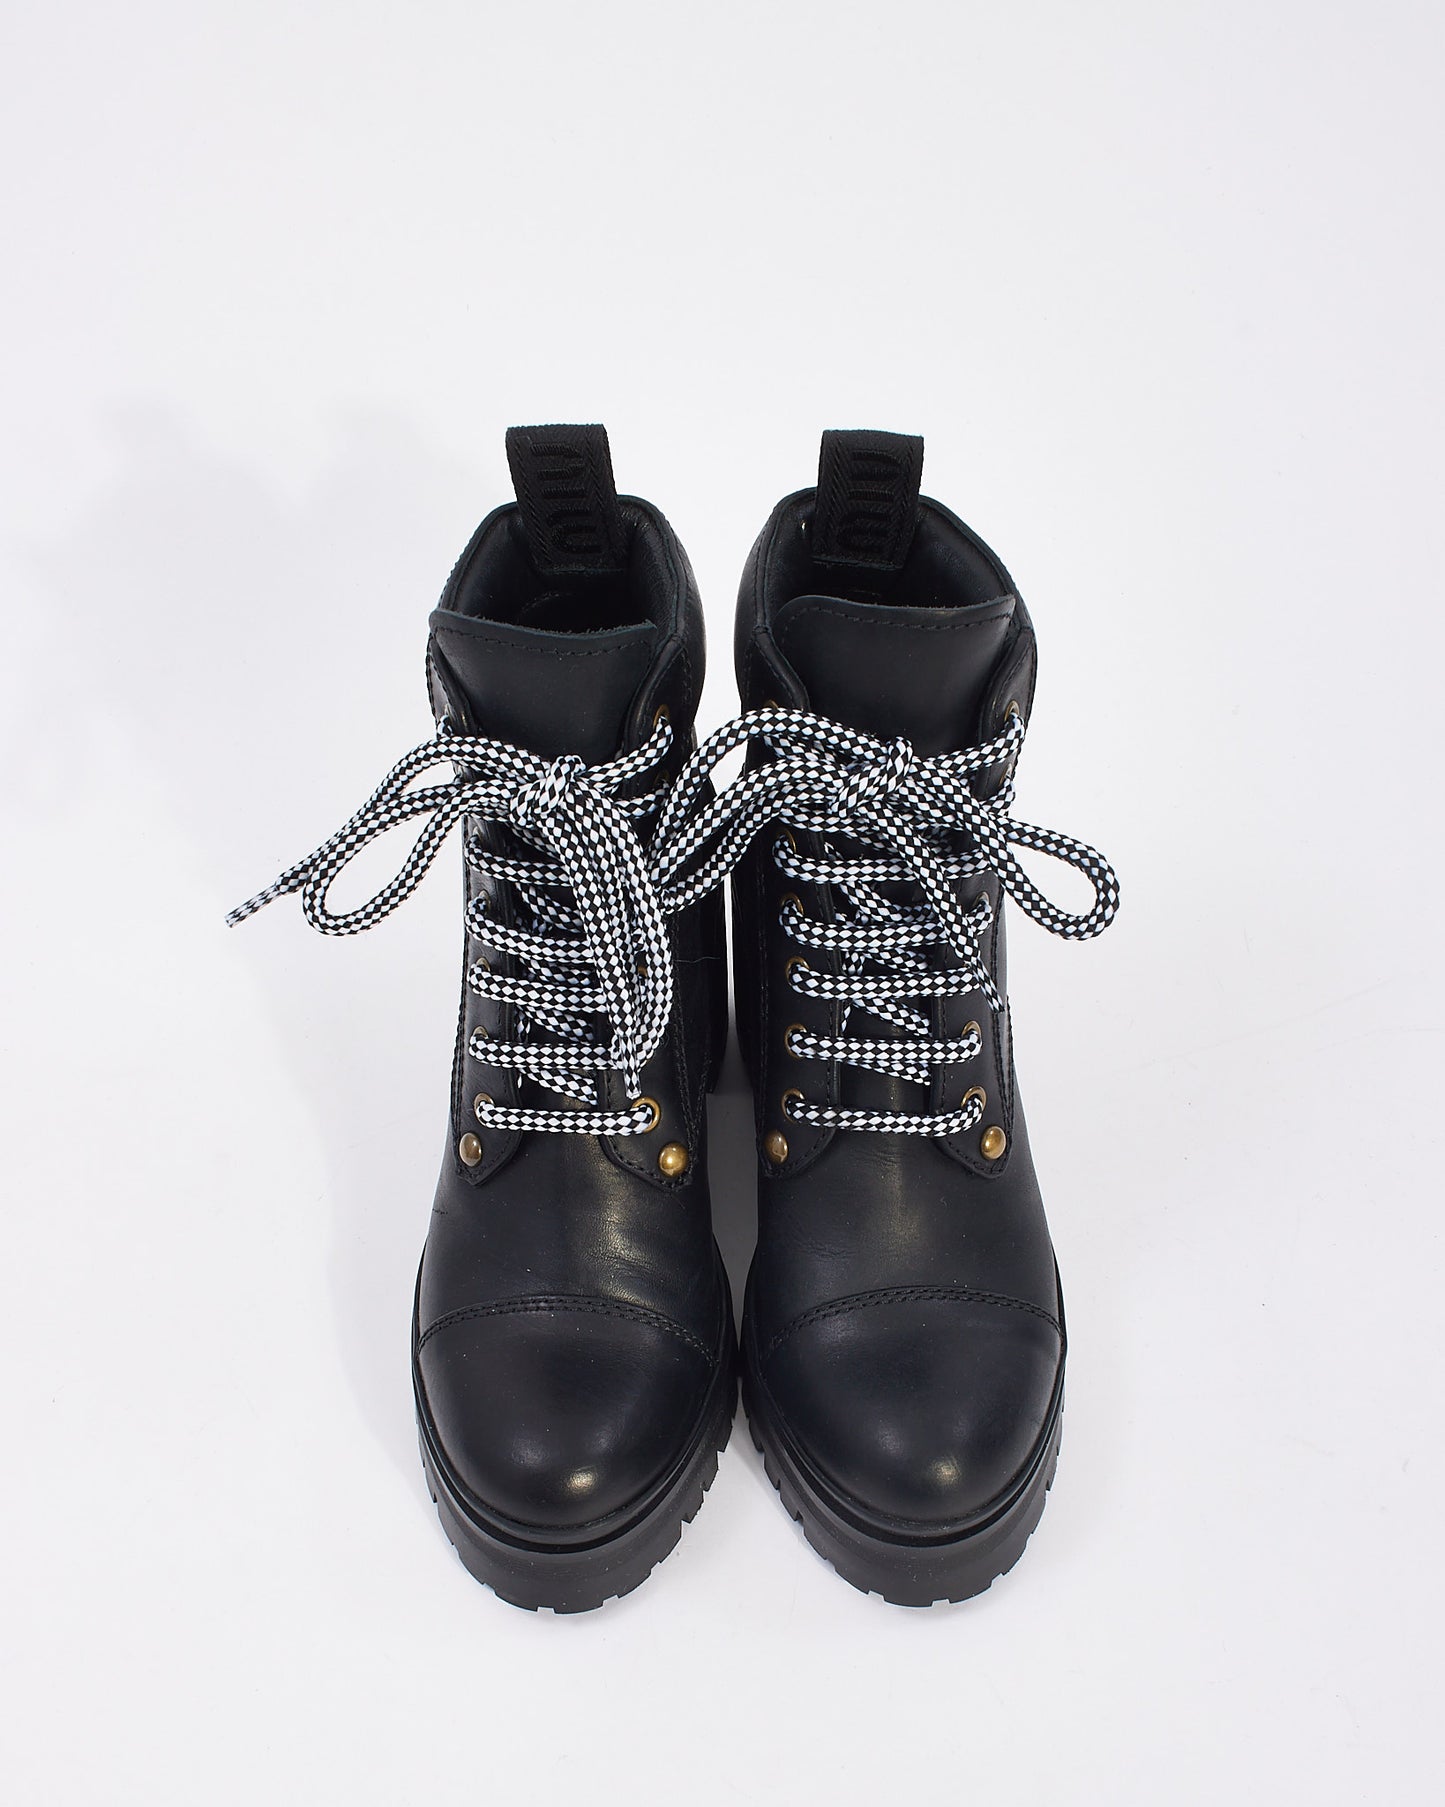 Miu Miu Black Leather Lace Up Heeled Booties - 36.5